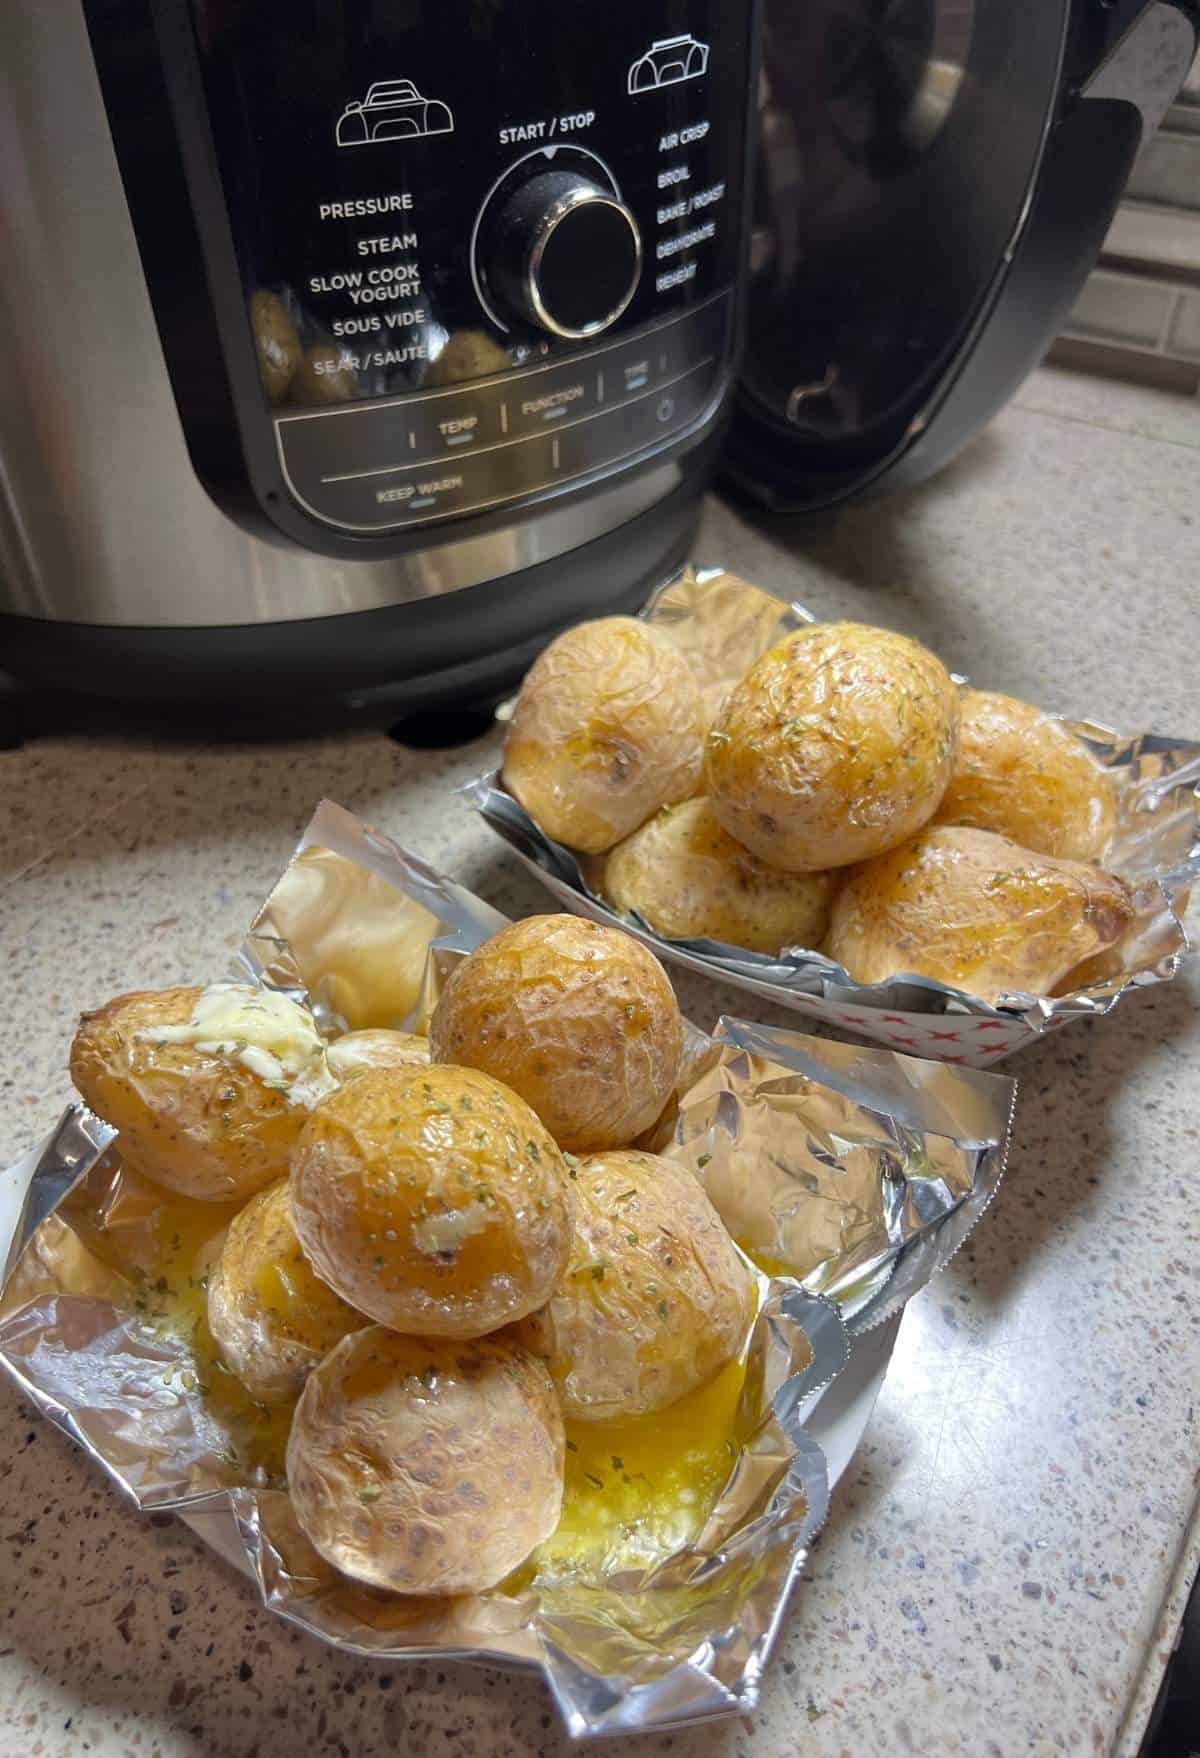 Instant Pot Salt Potatoes Recipe